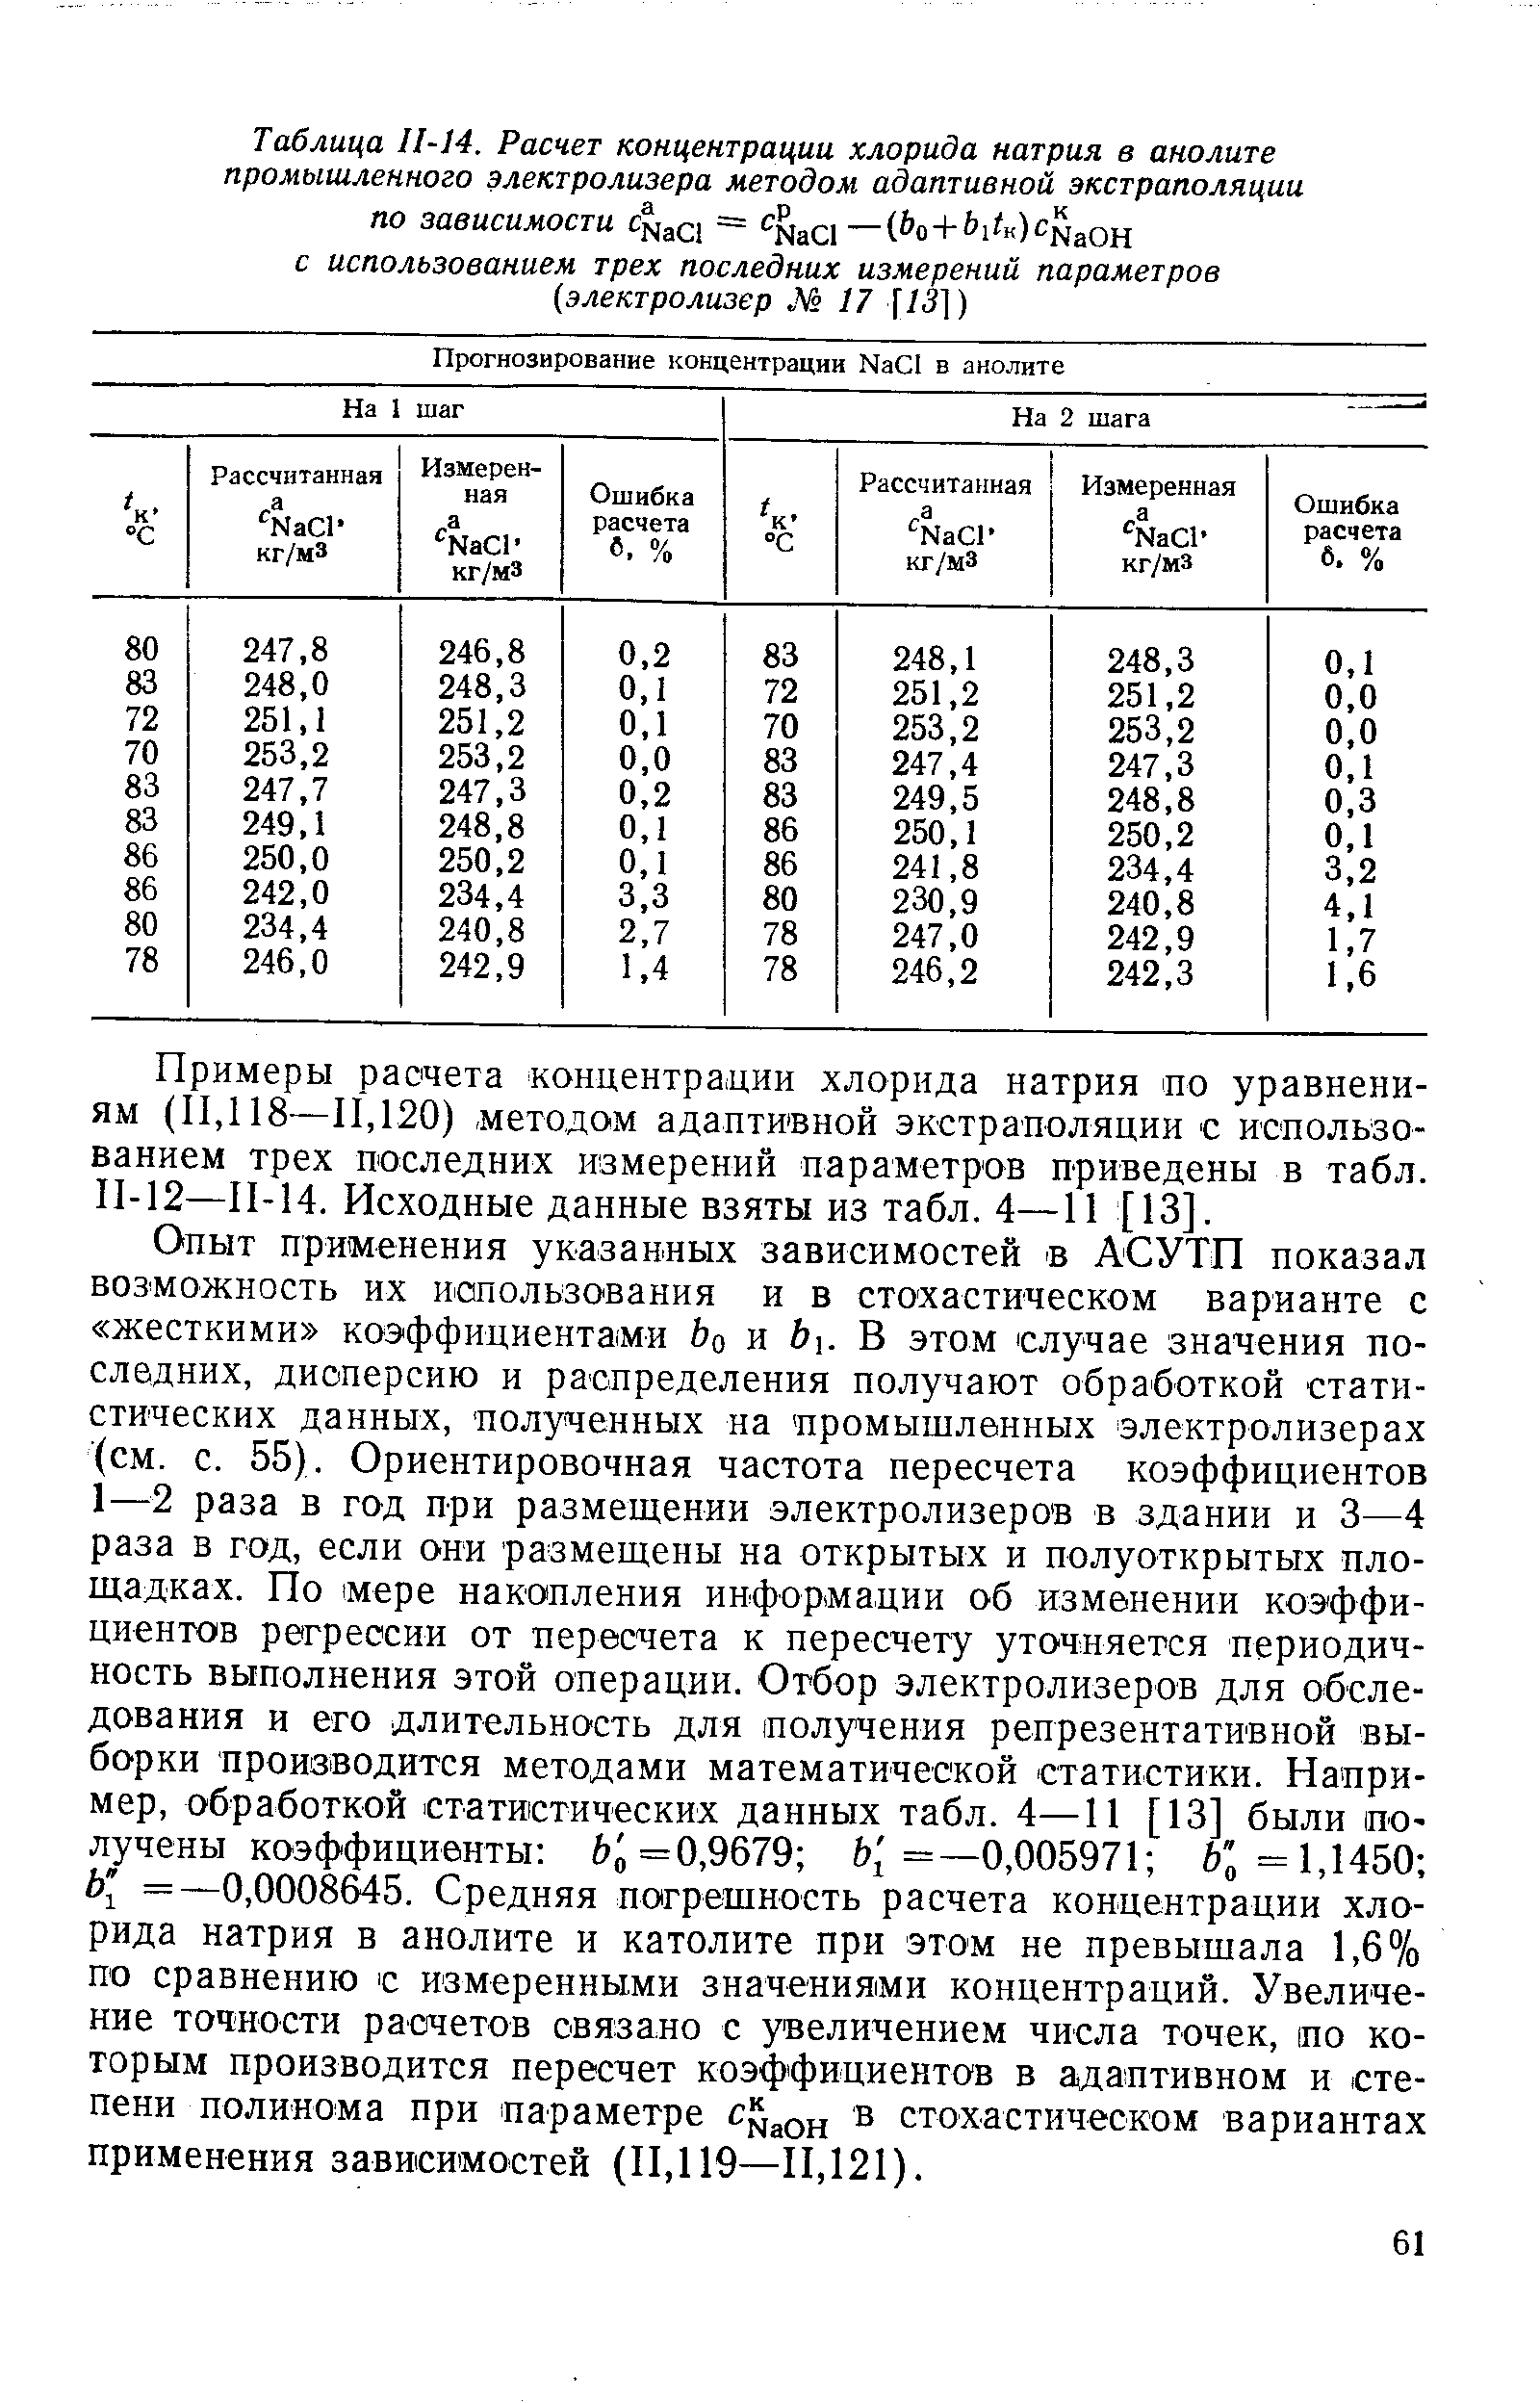 Примеры расчета концентрадии хлорида натрия но уравнениям (ИД 18—П,120) методом адаптивной экстраполяции с использованием трех последних измерений параметров приведены в табл. П-12—П-14. Исходные данные взяты из табл. 4—11 [13].